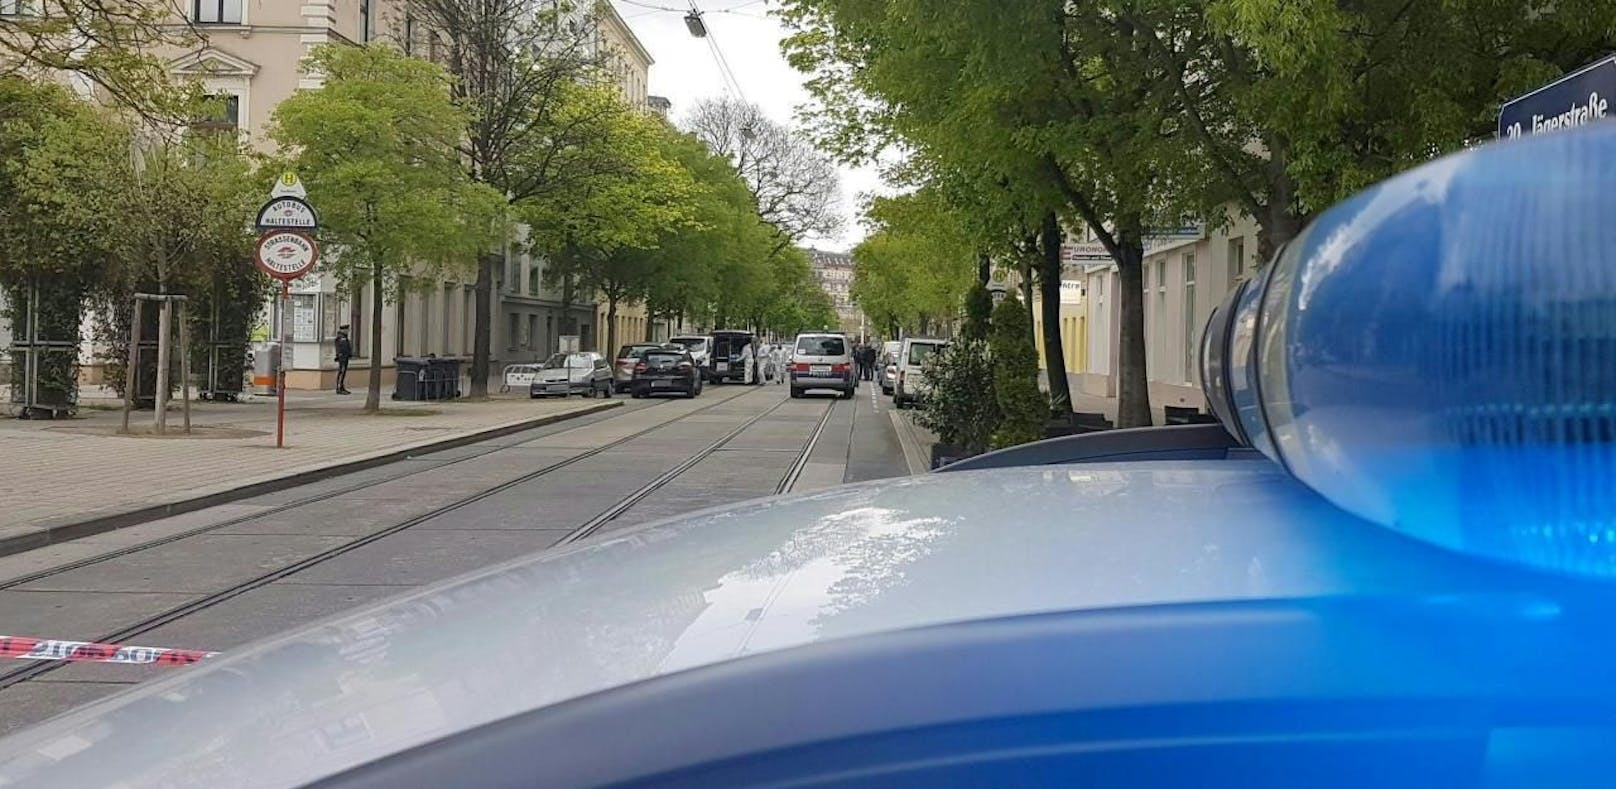 Polizeieinsatz in der Jägerstraße in Wien-Brigittenau. (Archivfoto)